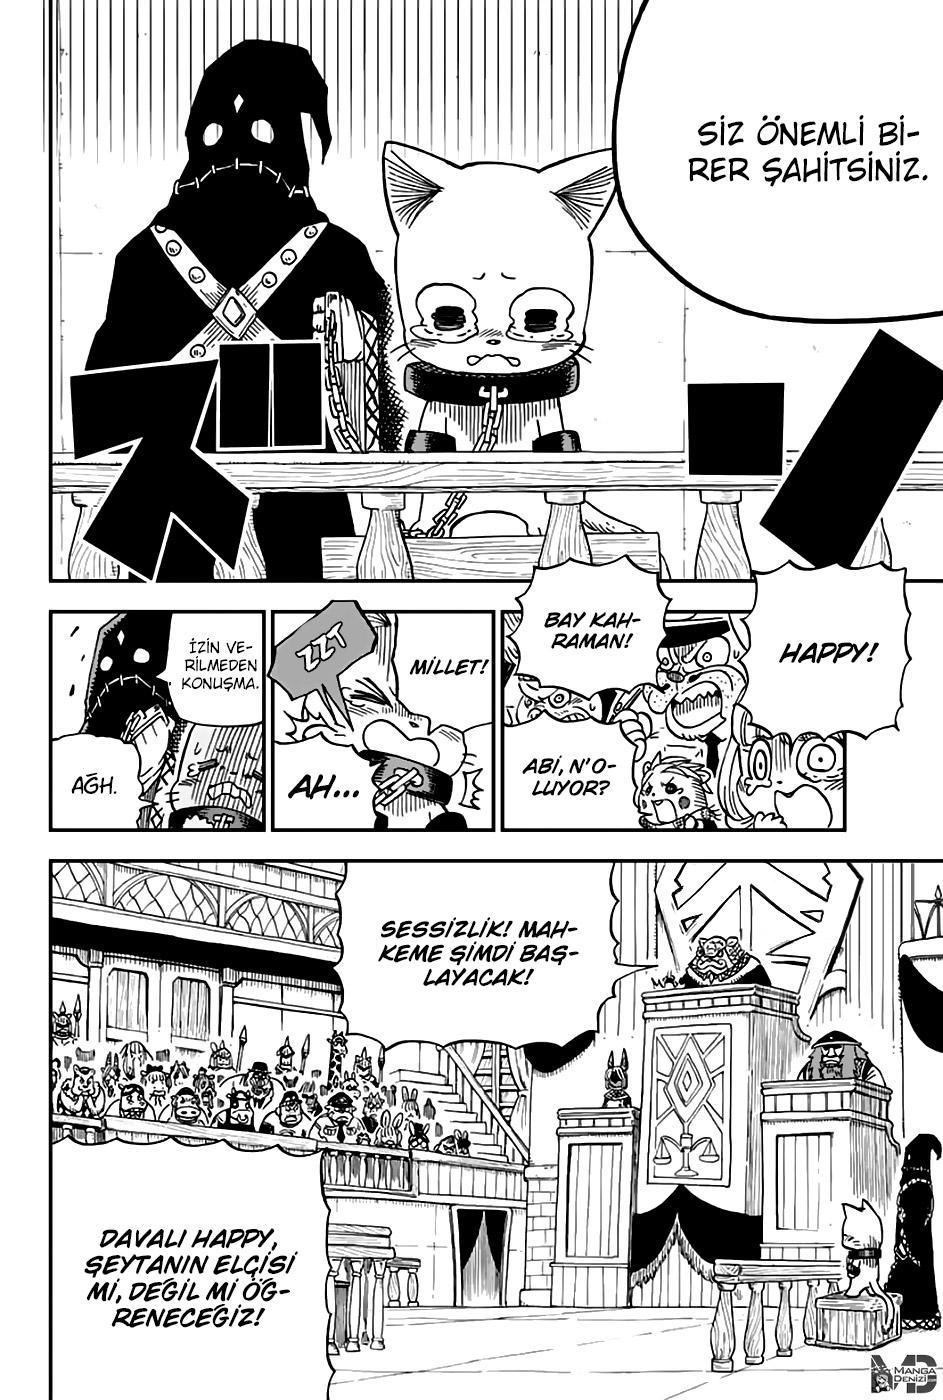 Fairy Tail: Happy's Great Adventure mangasının 44 bölümünün 3. sayfasını okuyorsunuz.